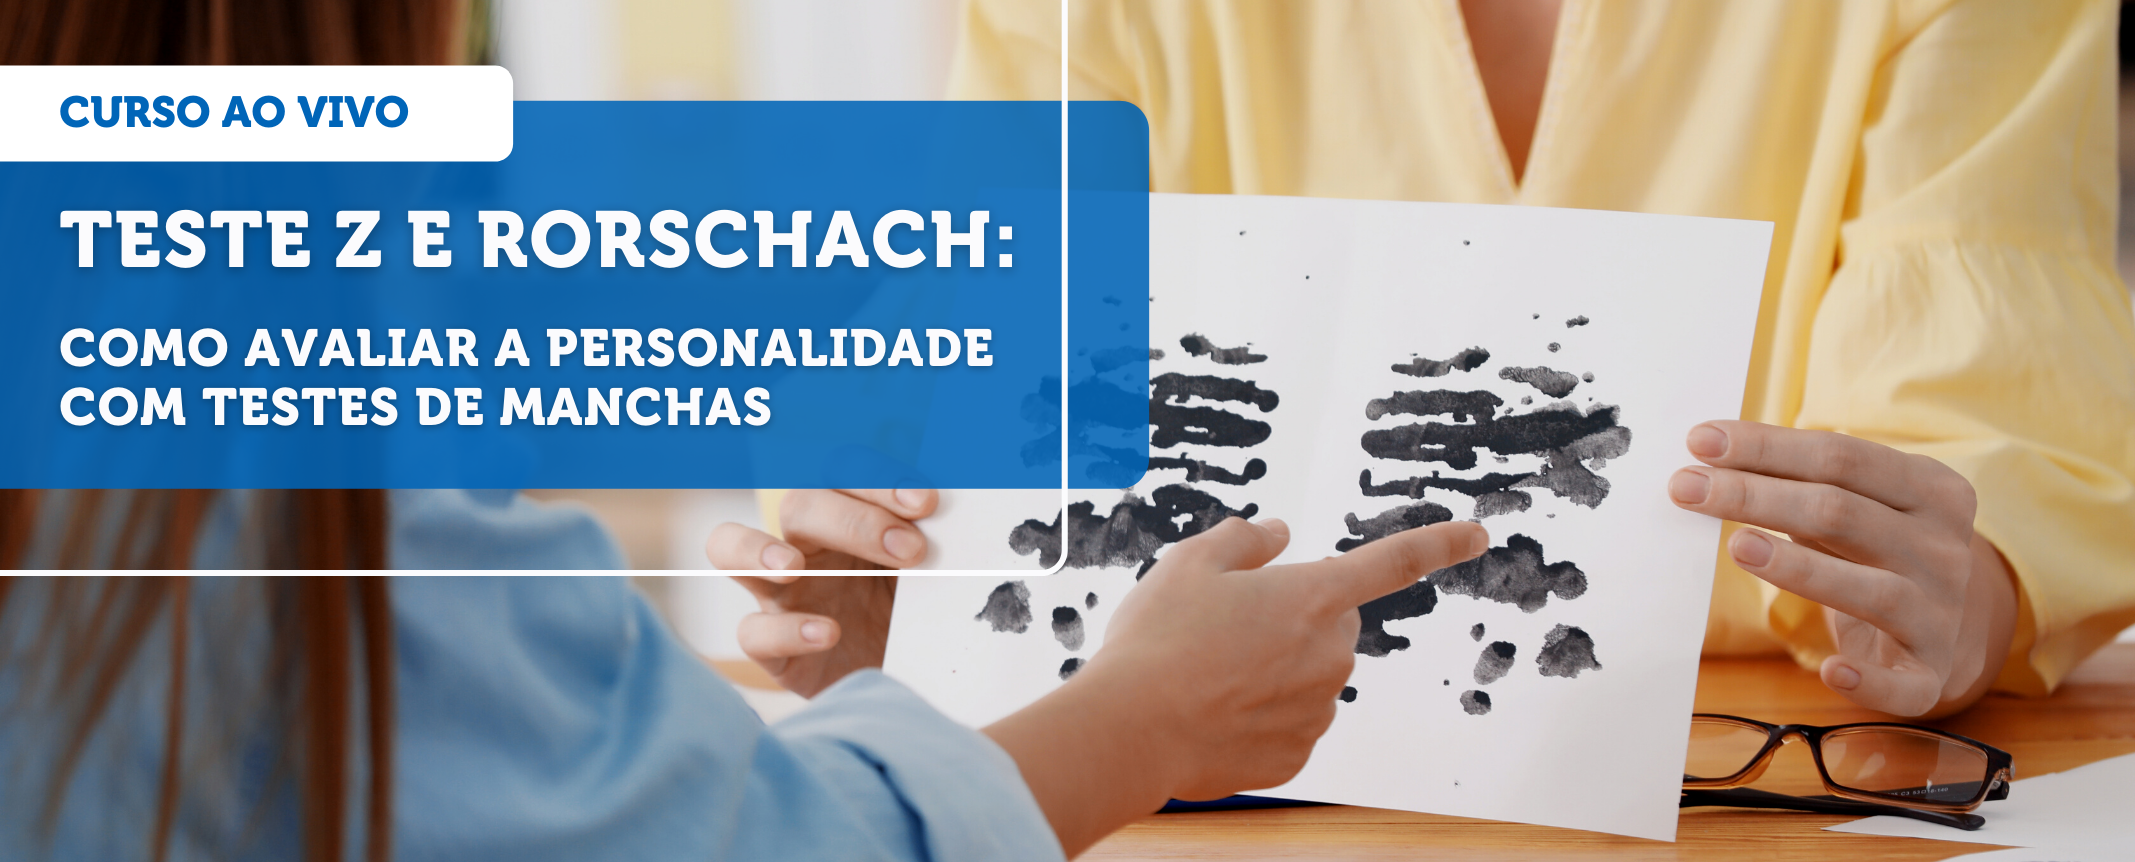 Rorschach e Teste Z: como avaliar a personalidade com testes de manchas -  Grupo Educativa